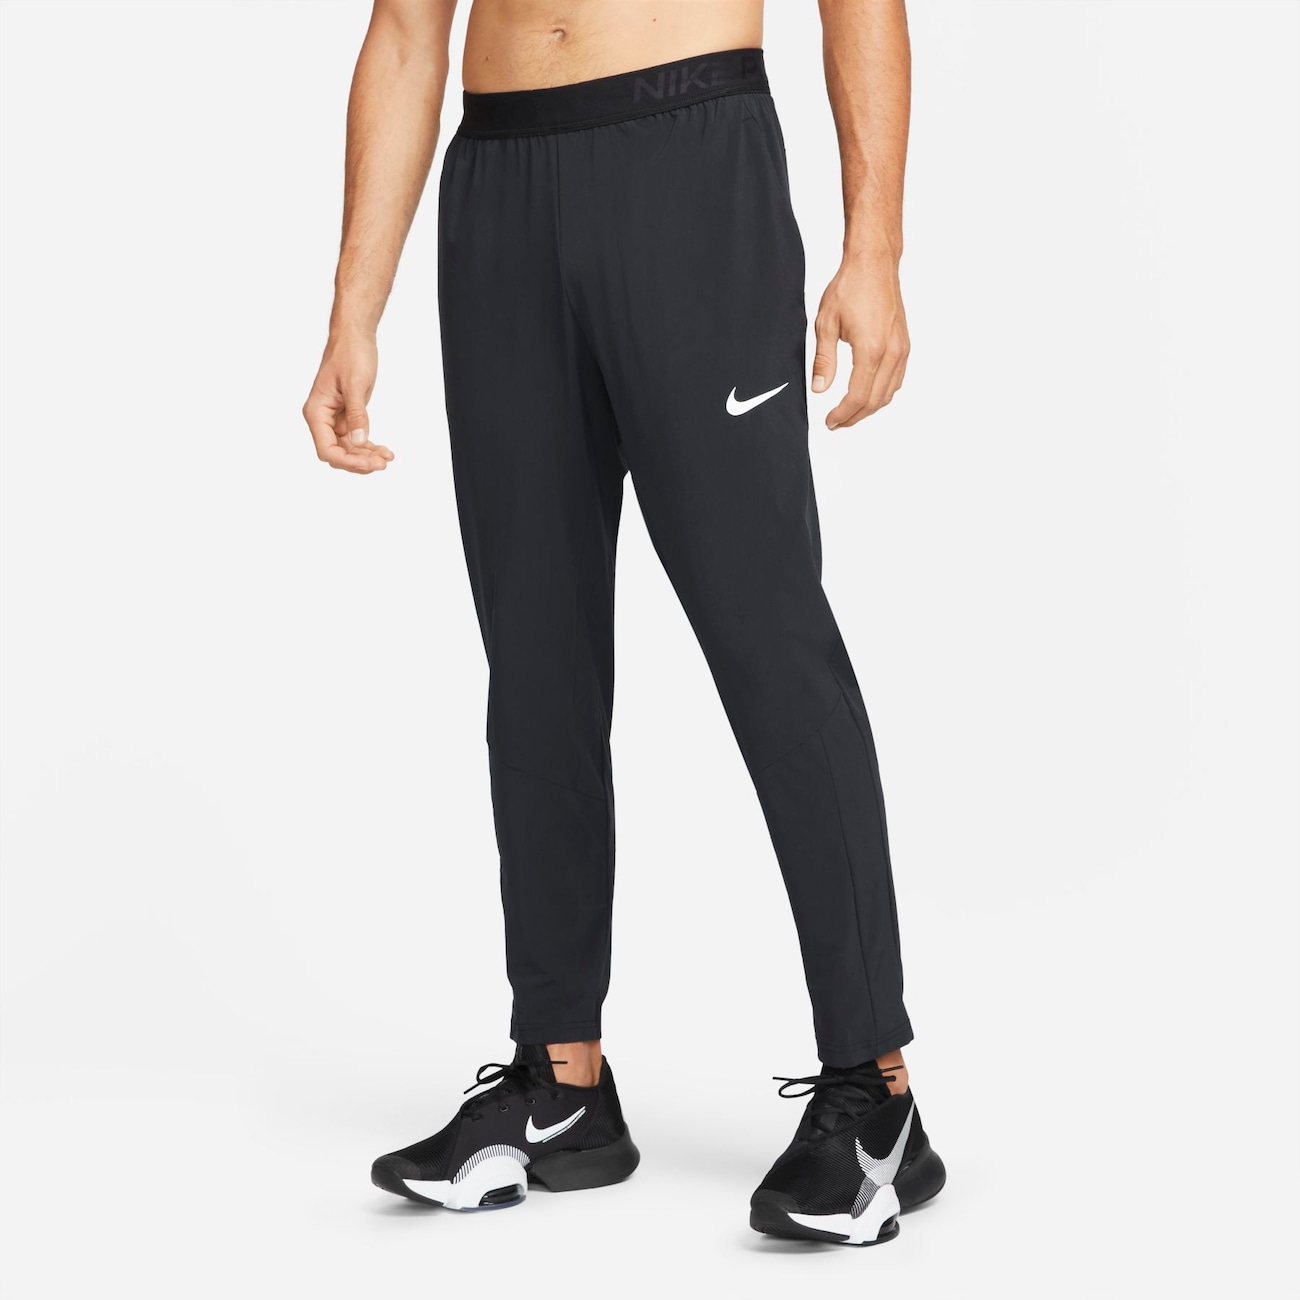 Calça Nike Pro Flex Vent Max Masculina